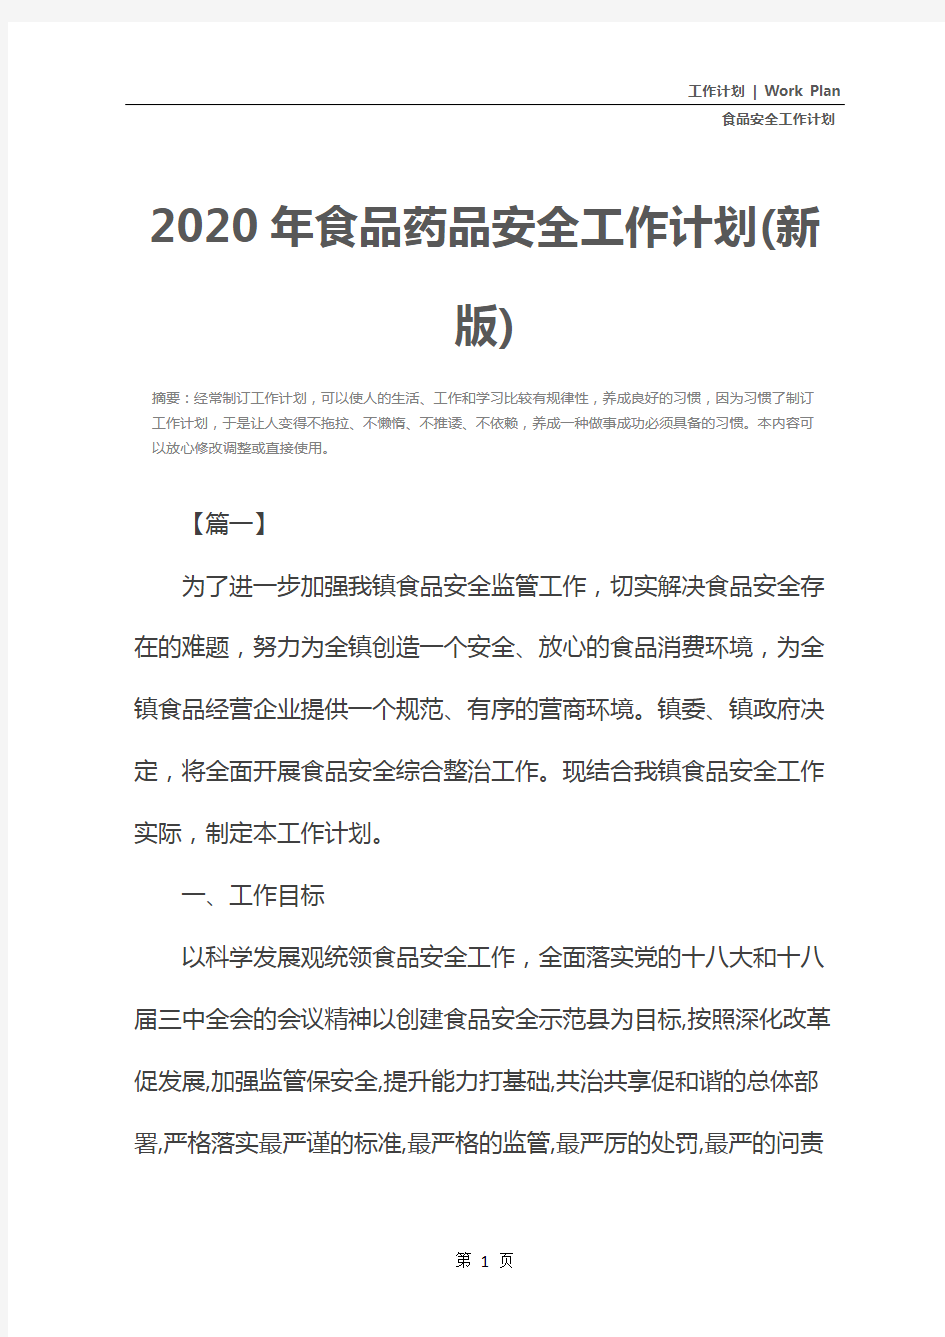 2020年食品药品安全工作计划(新版)